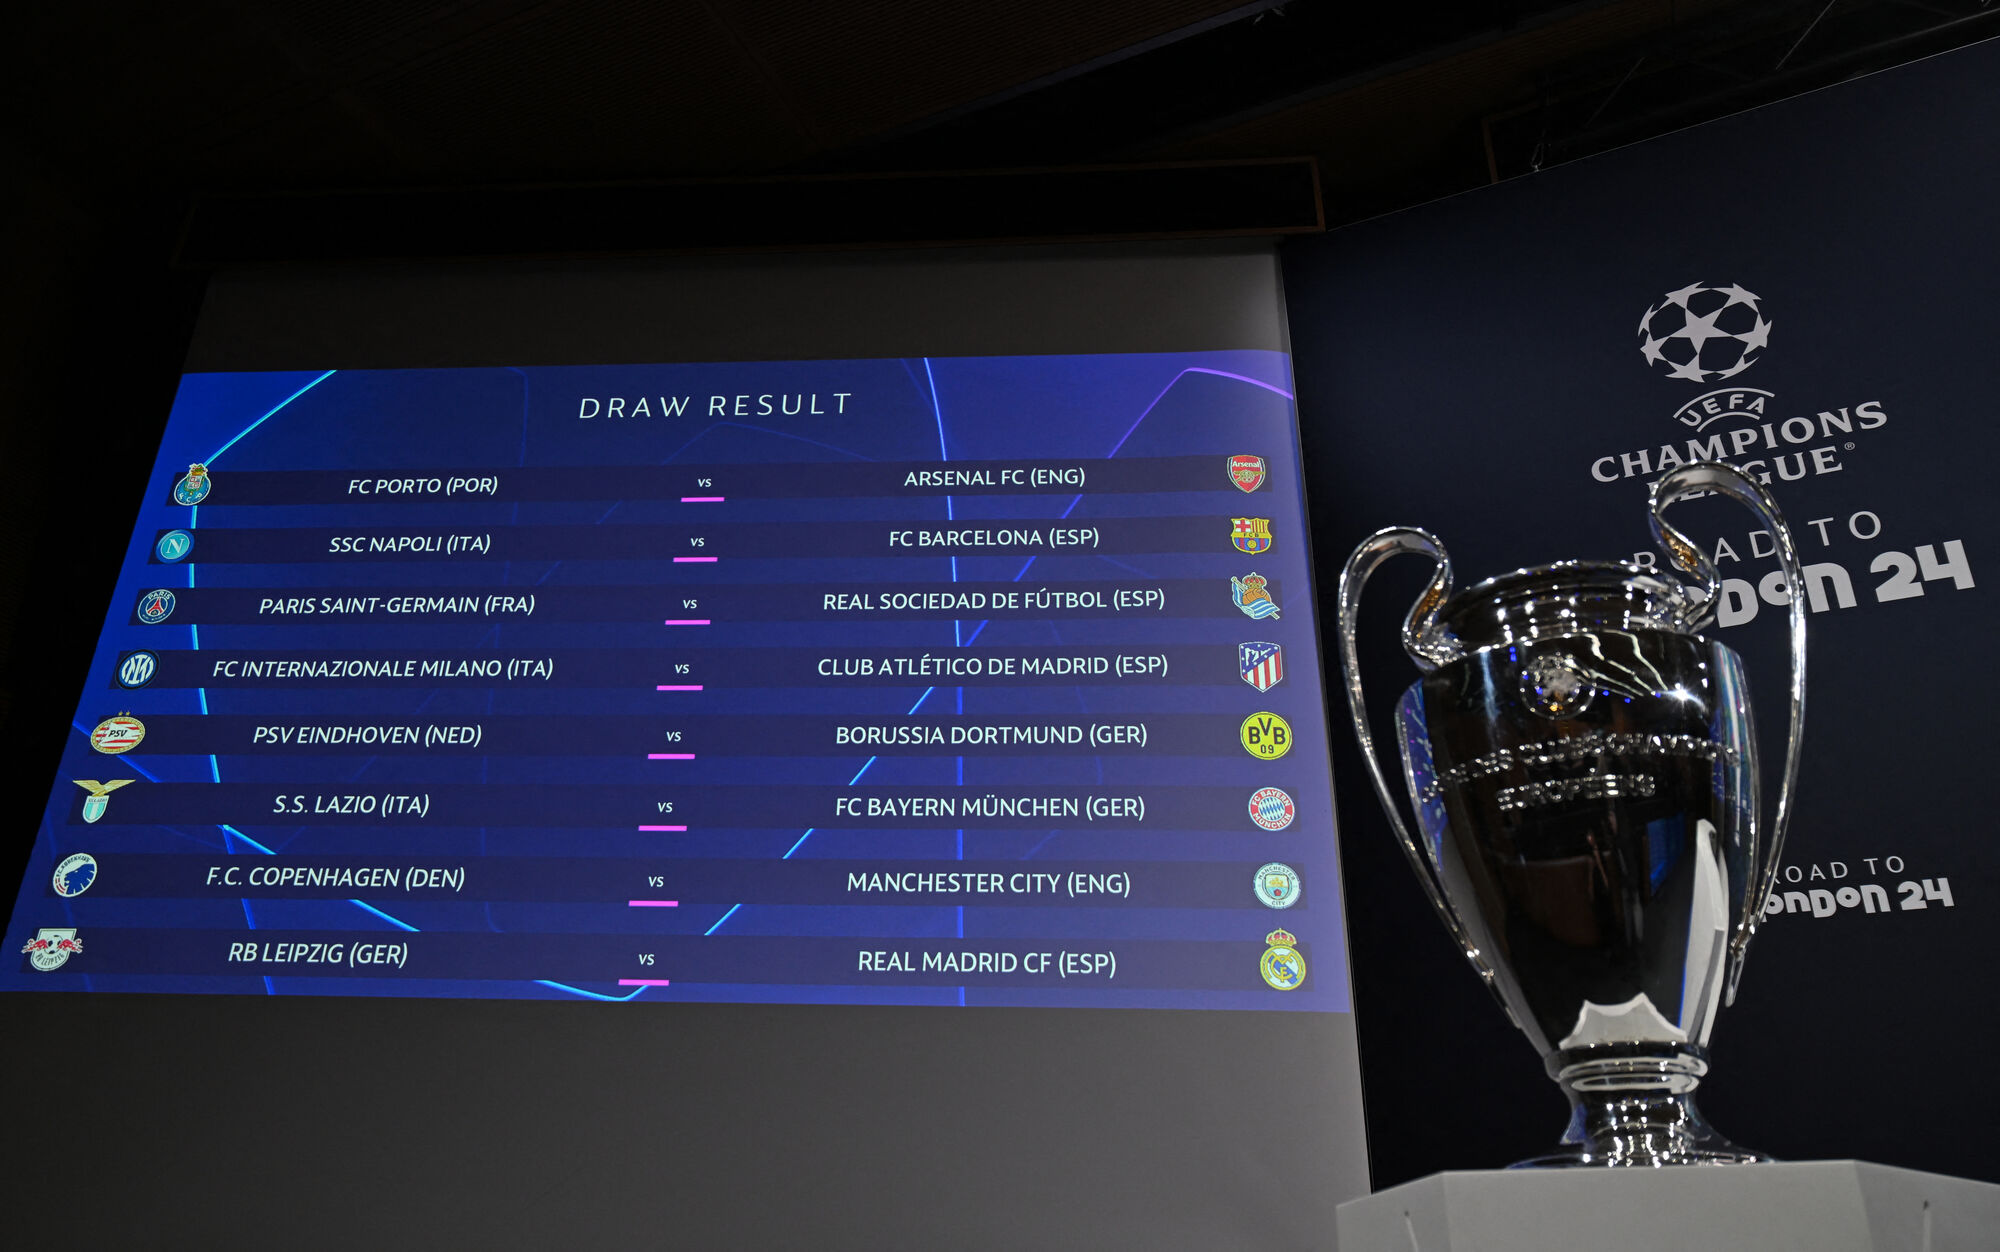 Champions League - Confira os já classificados para as Oitavas e